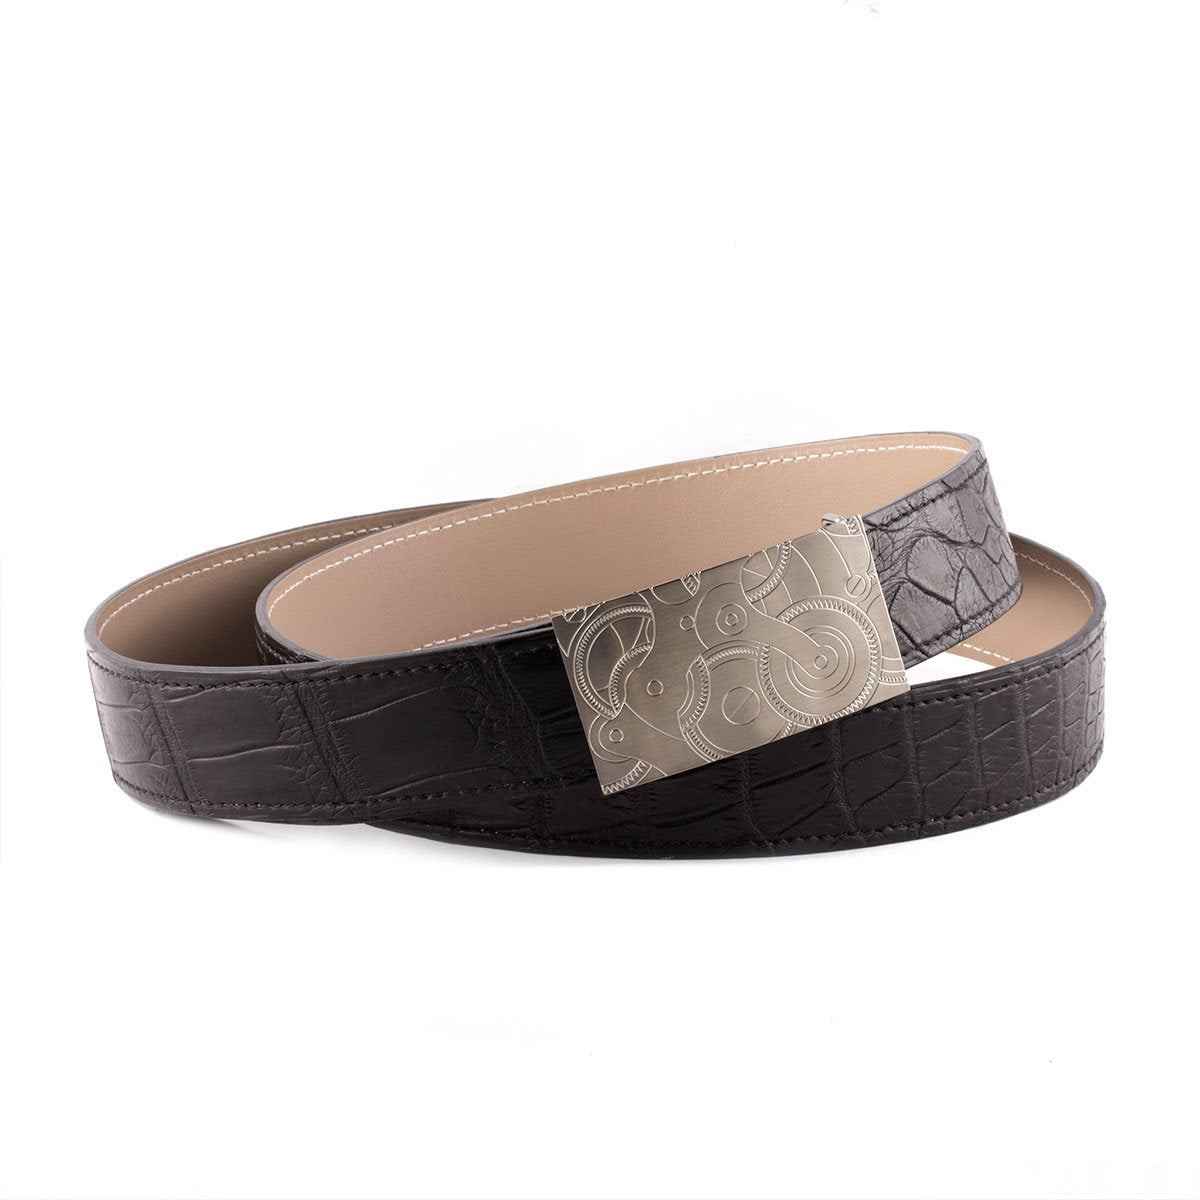 Hermès style reversible belt – Alligator Paris store – ABP Concept